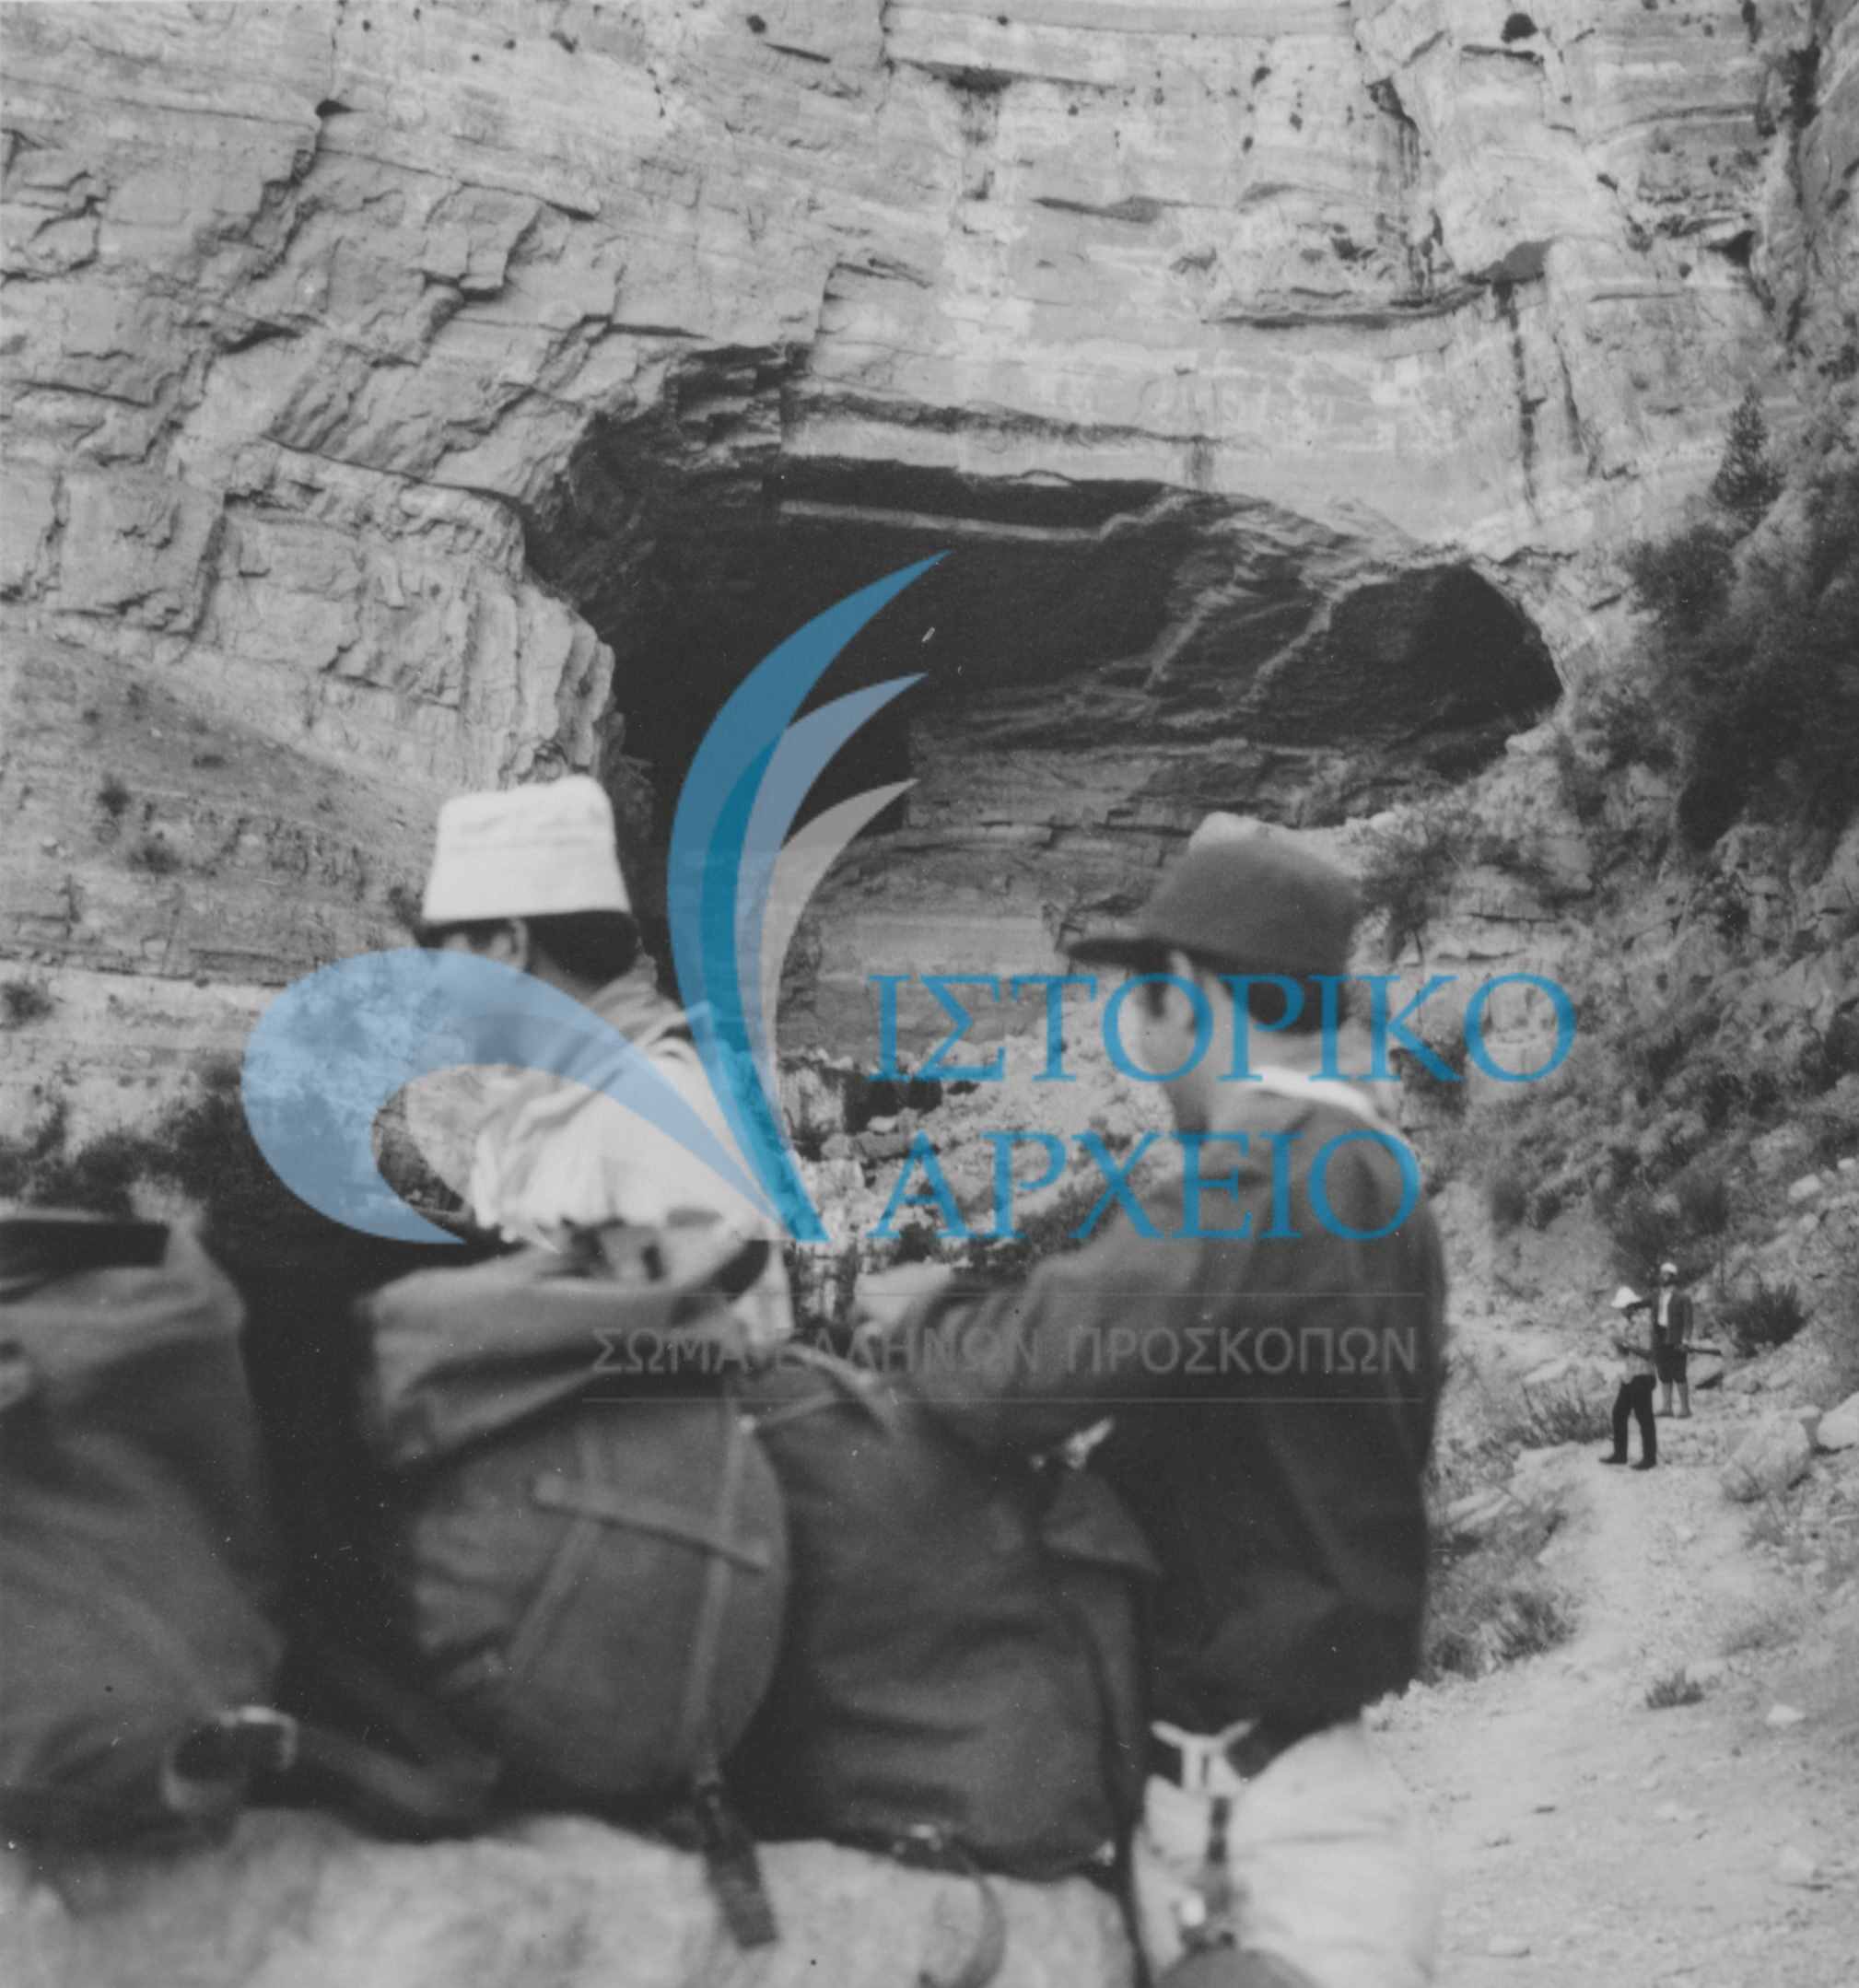 Οι Έλληνες πρόσκοποι του Λιβάνου στην πηγή του ποταμού Nahr Ibrahim στην Ακκουρα του Λιβάνου κατά την διάρκεια τριήμερης πεζοποριακής εκδρομής το 1966. Διακρίνονται: Α. Λαζαρίδης, Λ. Κάις, Γρ. Γρηγοριάδης, Π. Αρμάος